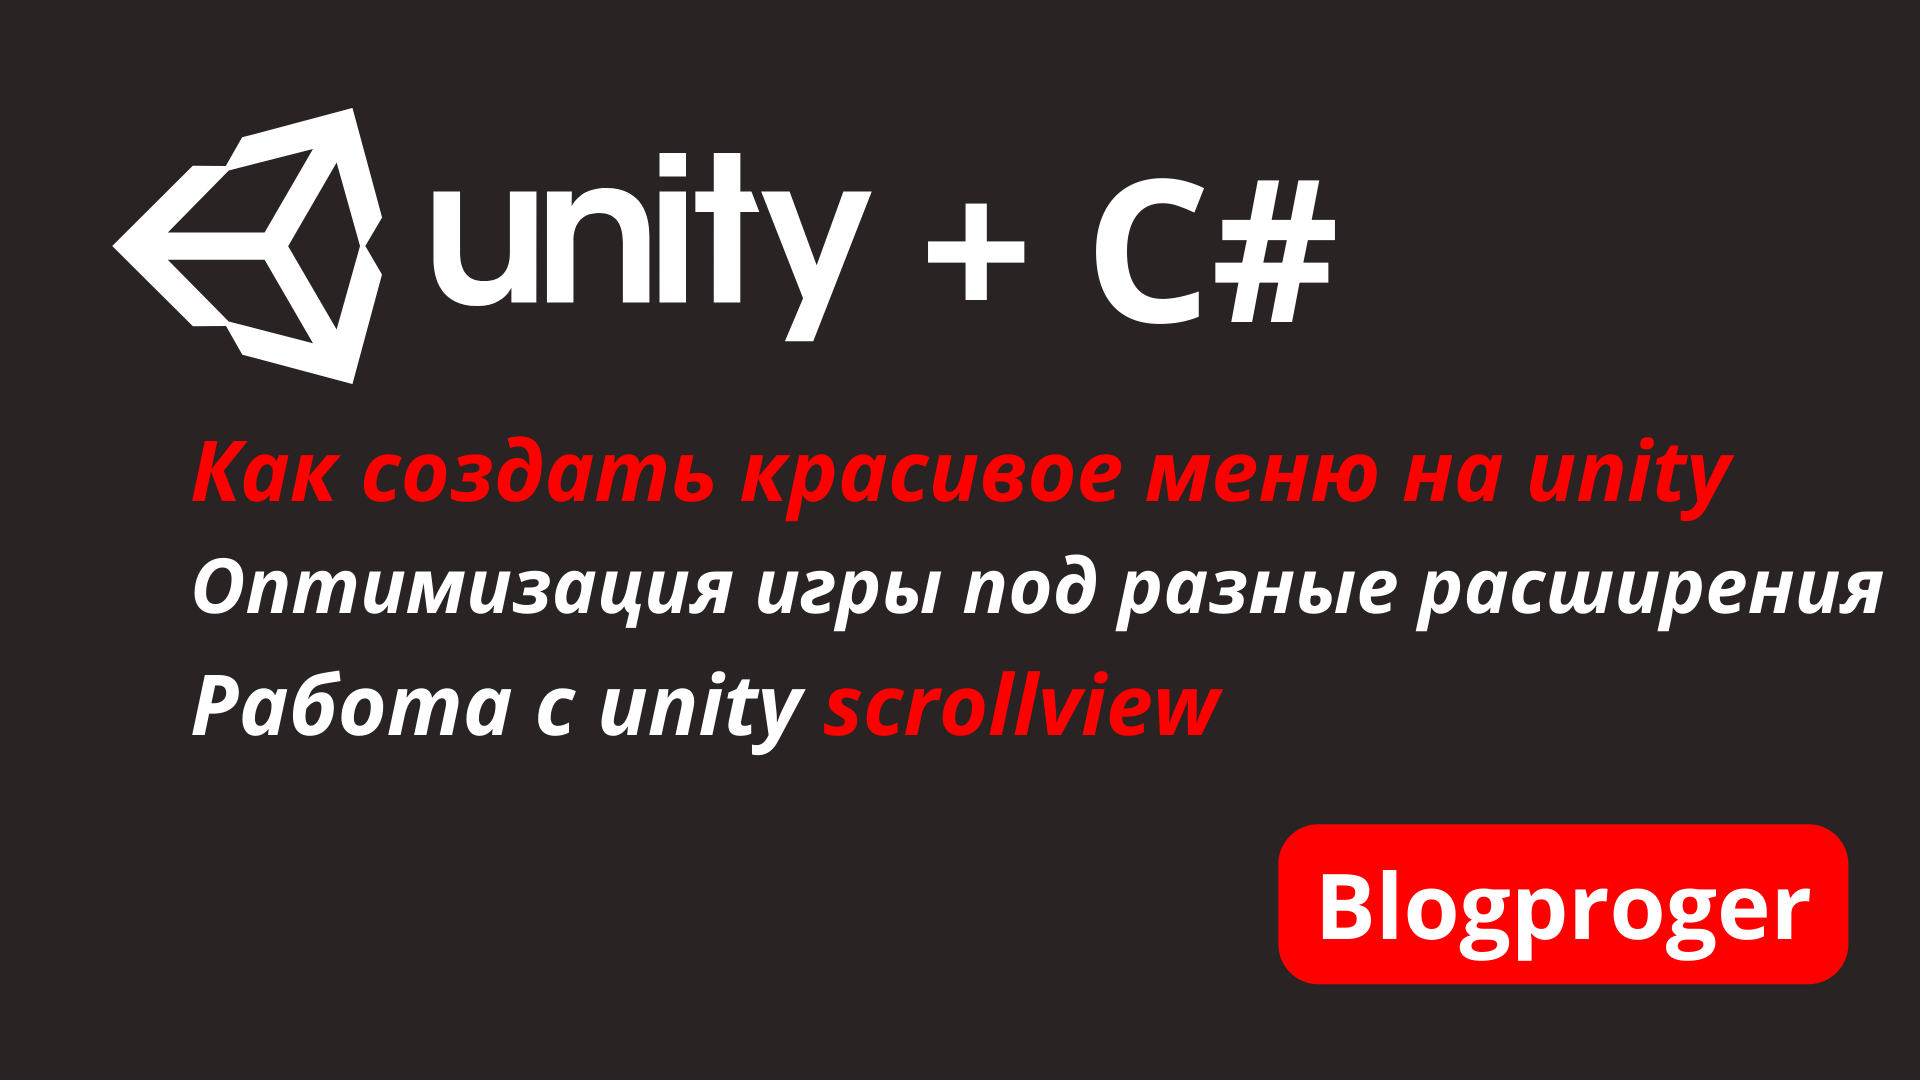 Unity как сделать красивое меню выбора уровней. Оптимизация игры на unity под разные расширения. Unity scroll view